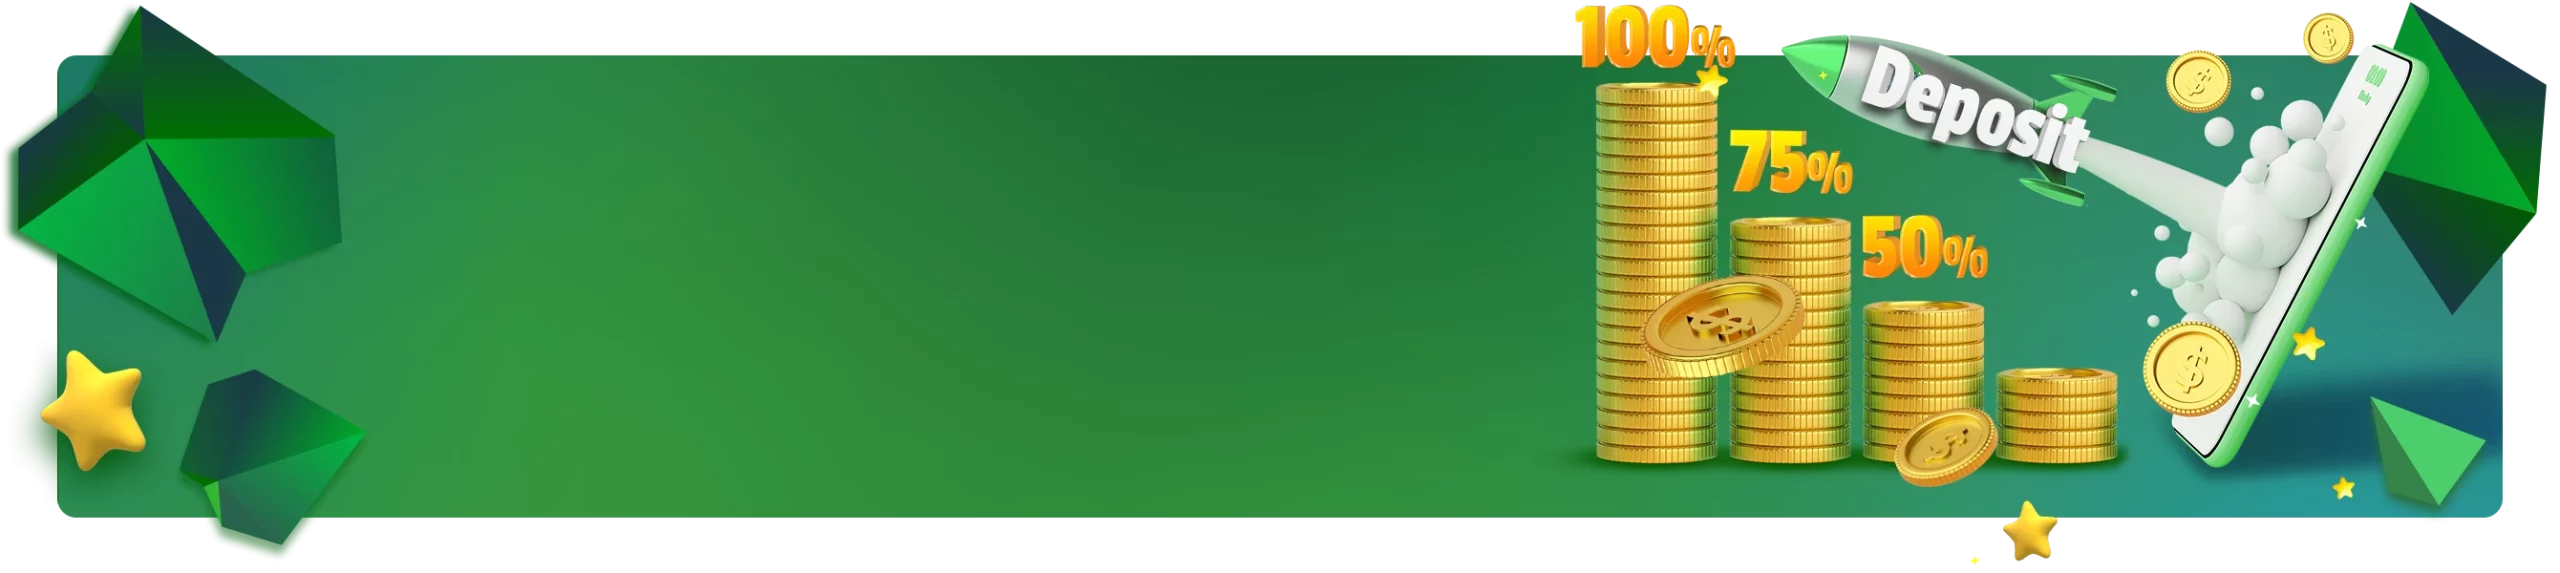 Banner promocional 'Boost da Segunda' mostrando percentagens de bônus como 100%, 75% e 50% ao lado de pilhas de moedas de ouro e um celular exibindo mais moedas, com um botão amarelo escrito 'RECEBER' sobre um fundo verde com estrelas e polígonos.